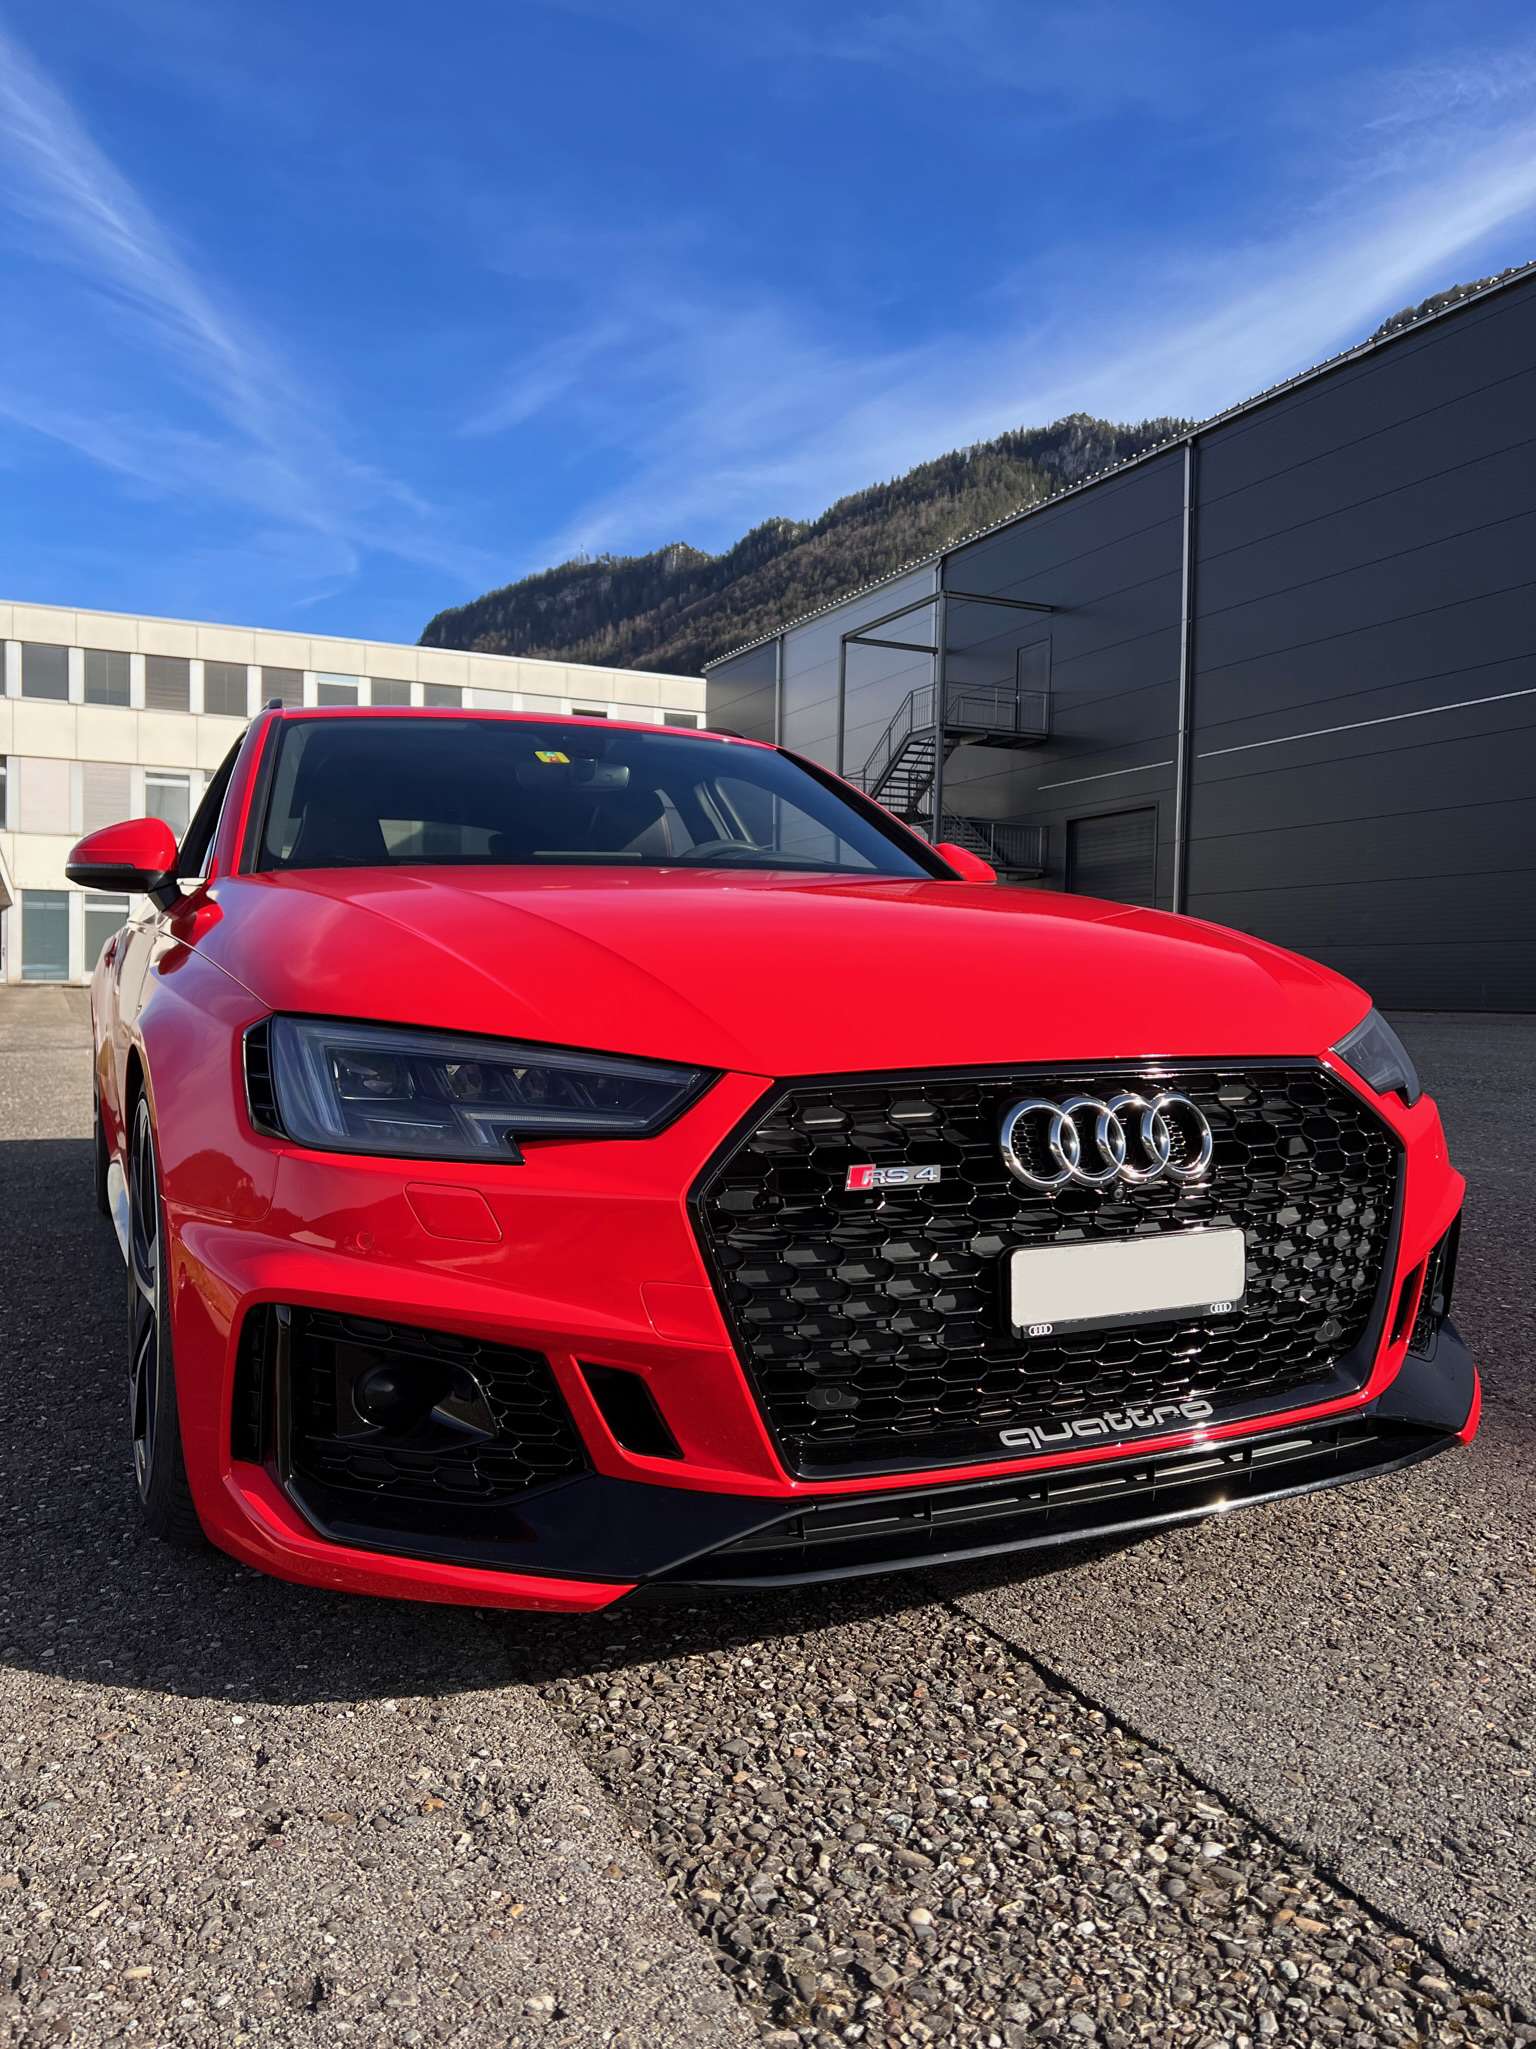 Covering complet sur une jolie Audi RS4